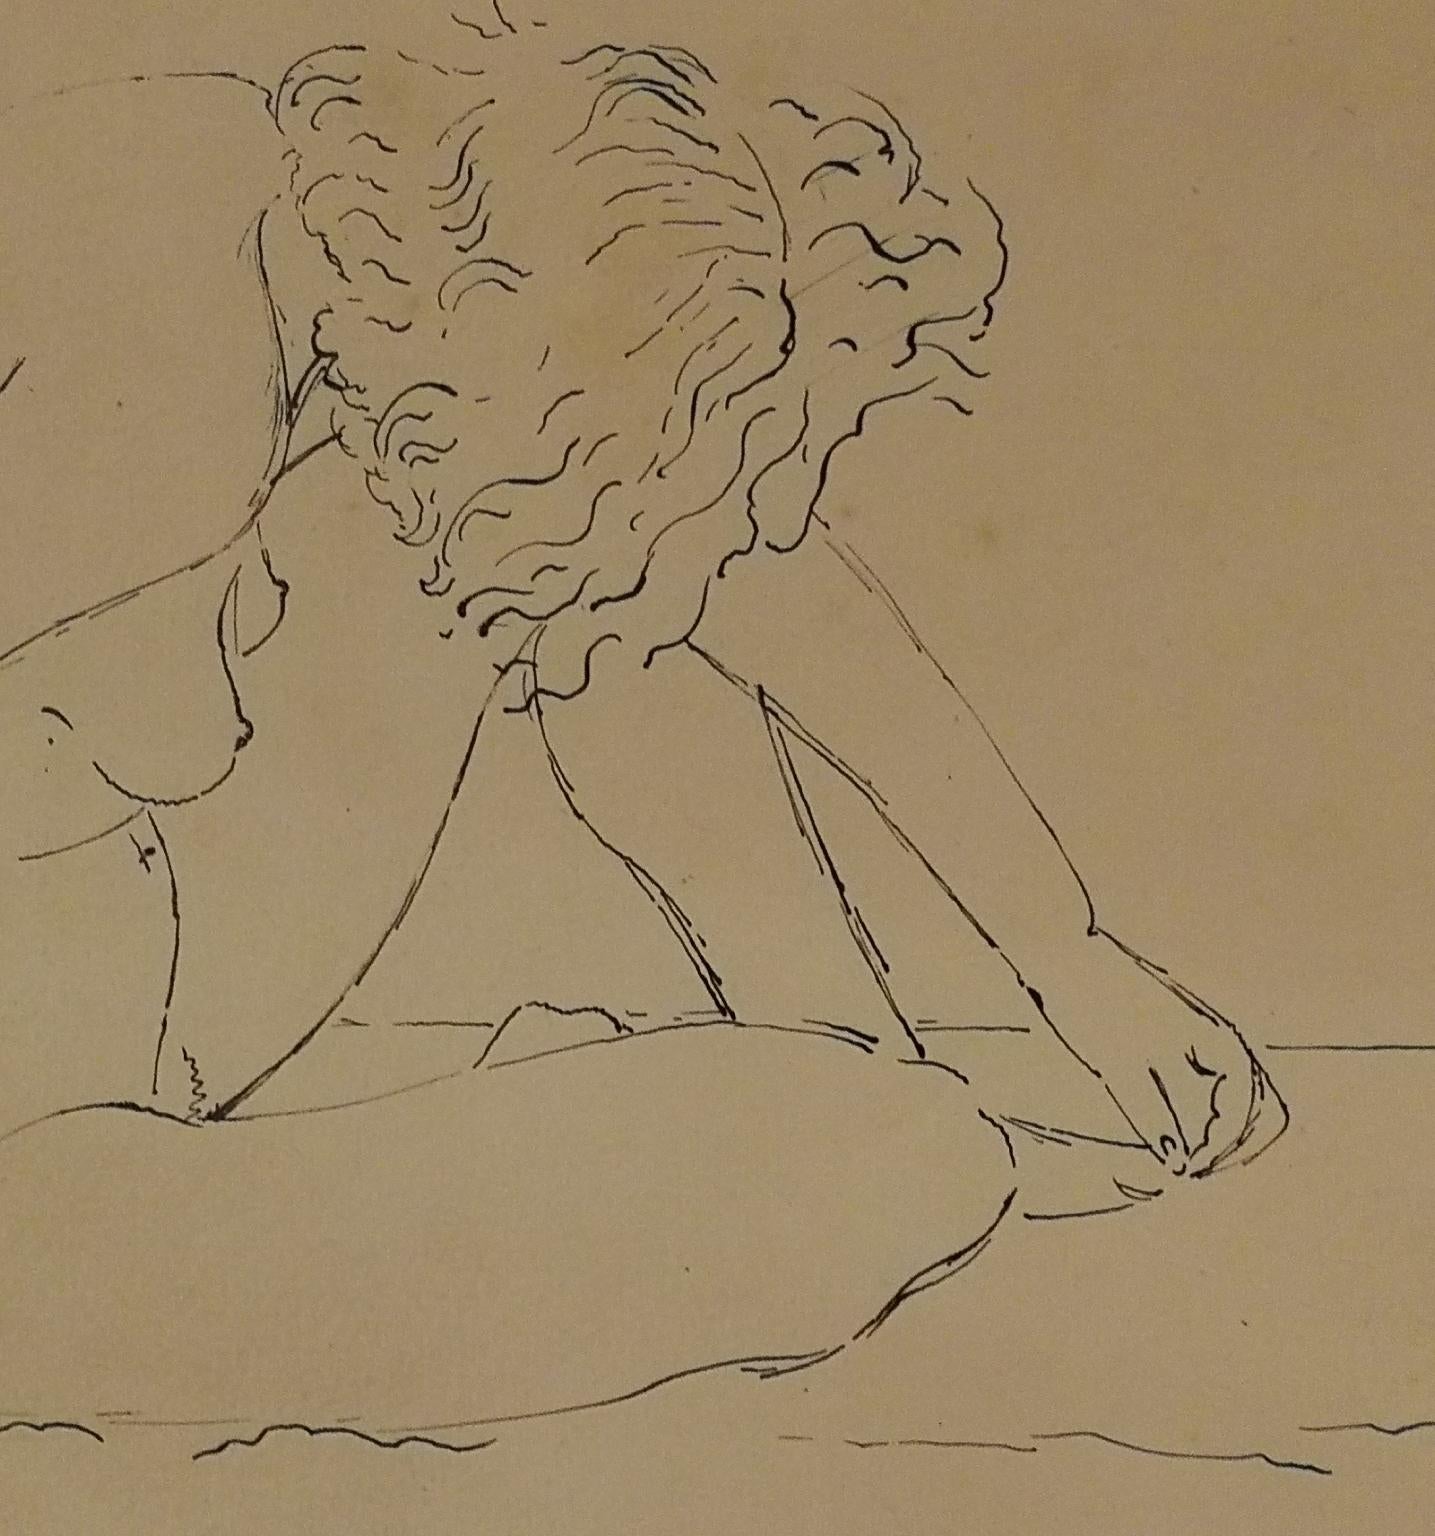 Die Zeichnung, die in der rechten unteren Ecke mit Colacicchi signiert ist, ist eine Studie einer nackten Frau mit Tusche auf Papier, die dargestellt ist, während sie sich auf sich selbst faltet, wobei der Kopf nach unten liegt und ihre Zehen